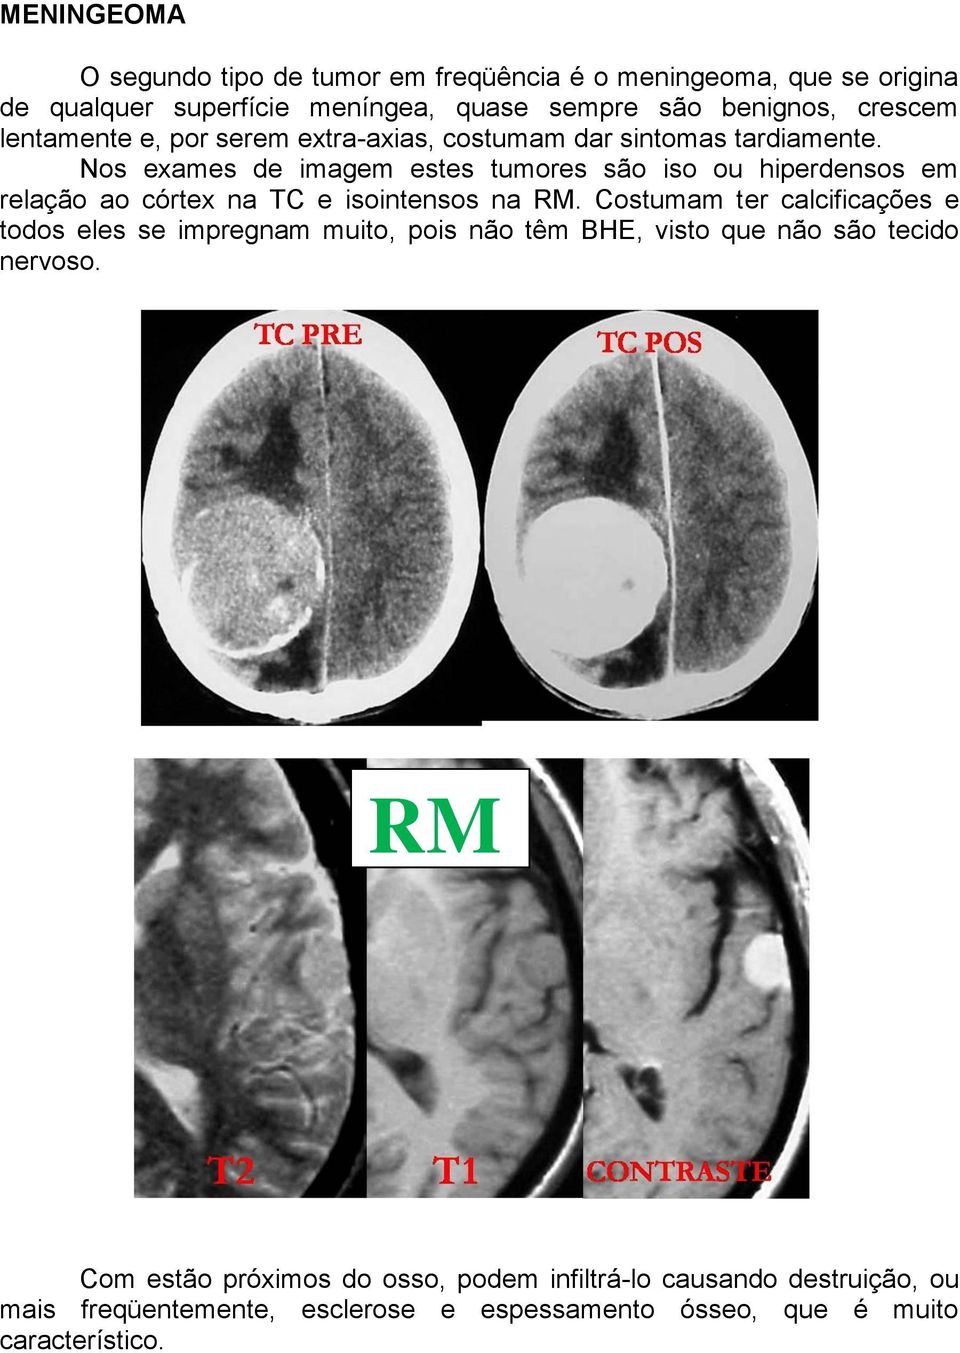 Nos exames de imagem estes tumores são iso ou hiperdensos em relação ao córtex na TC e isointensos na RM.